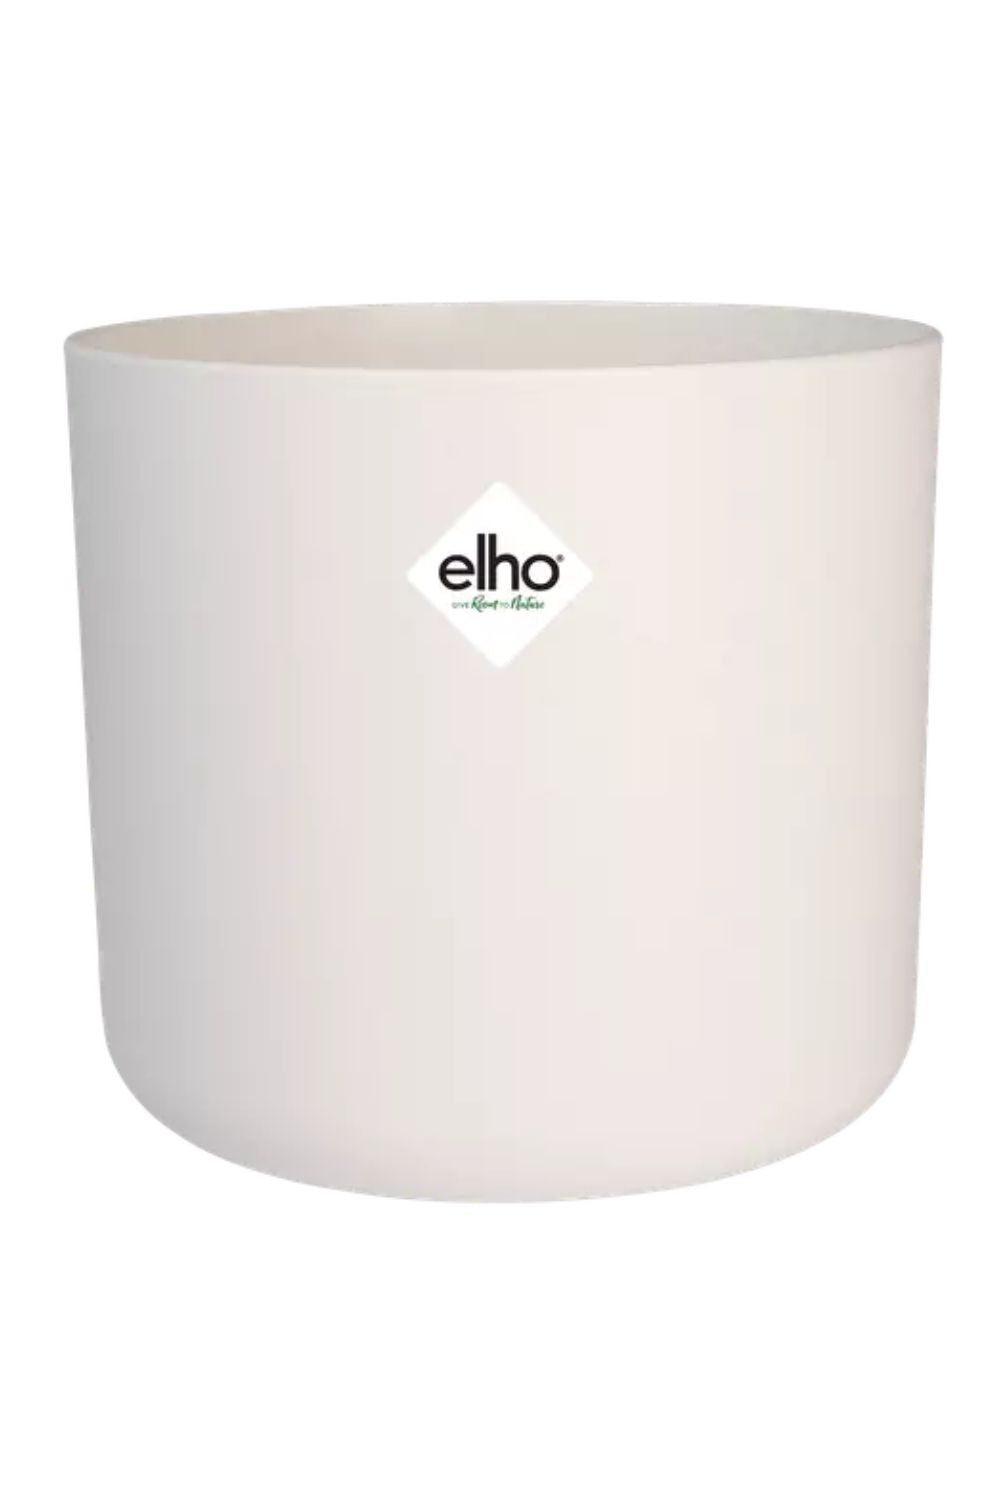 Blumentopf Elho B. for soft rund Silky White 14cm